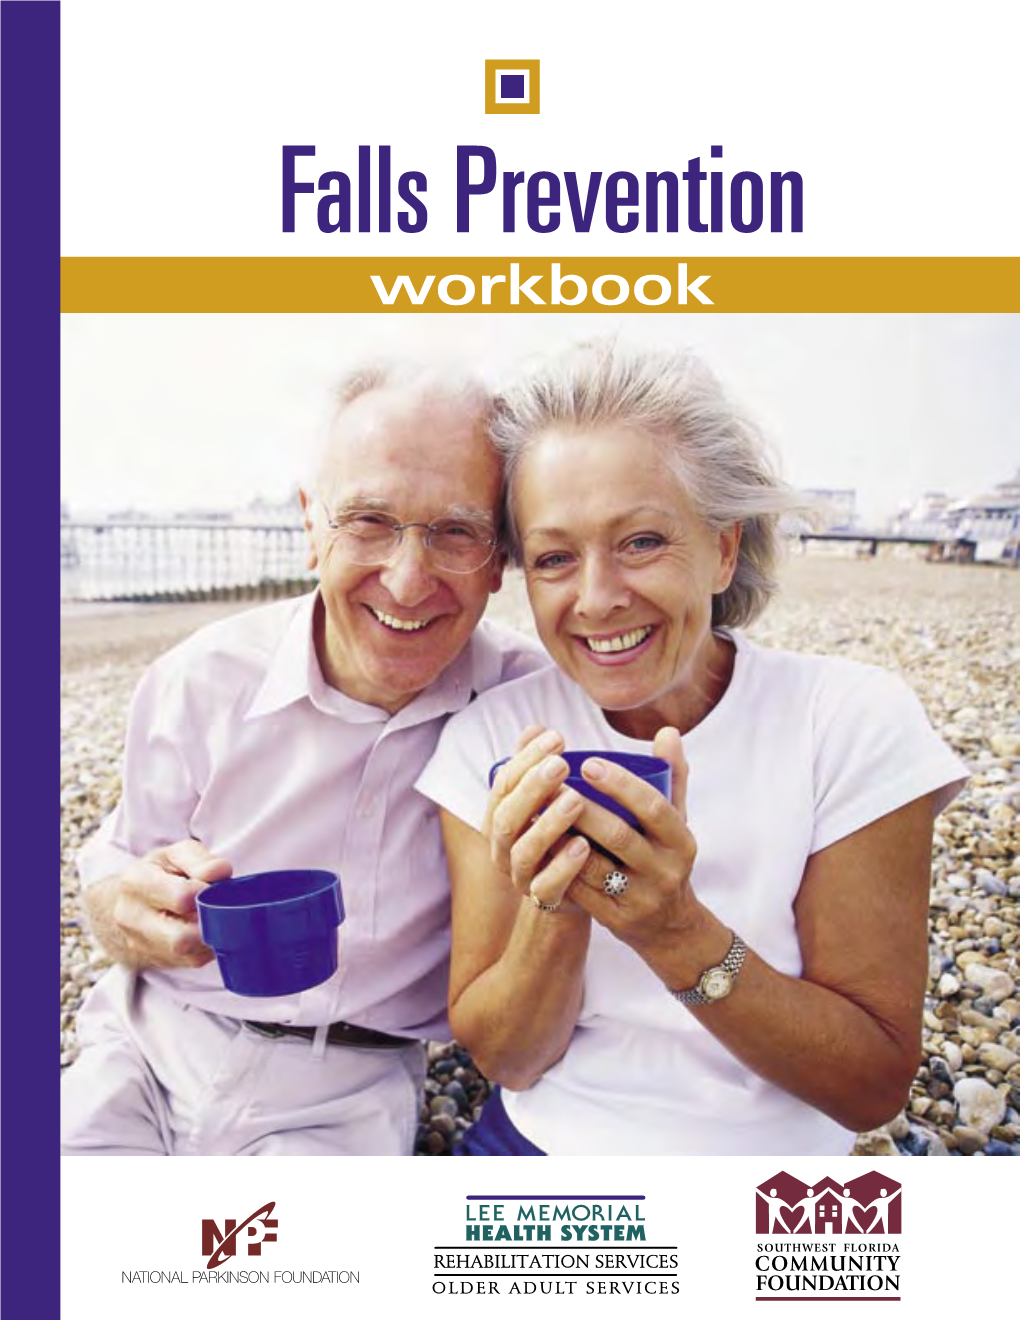 Falls Prevention Workbook